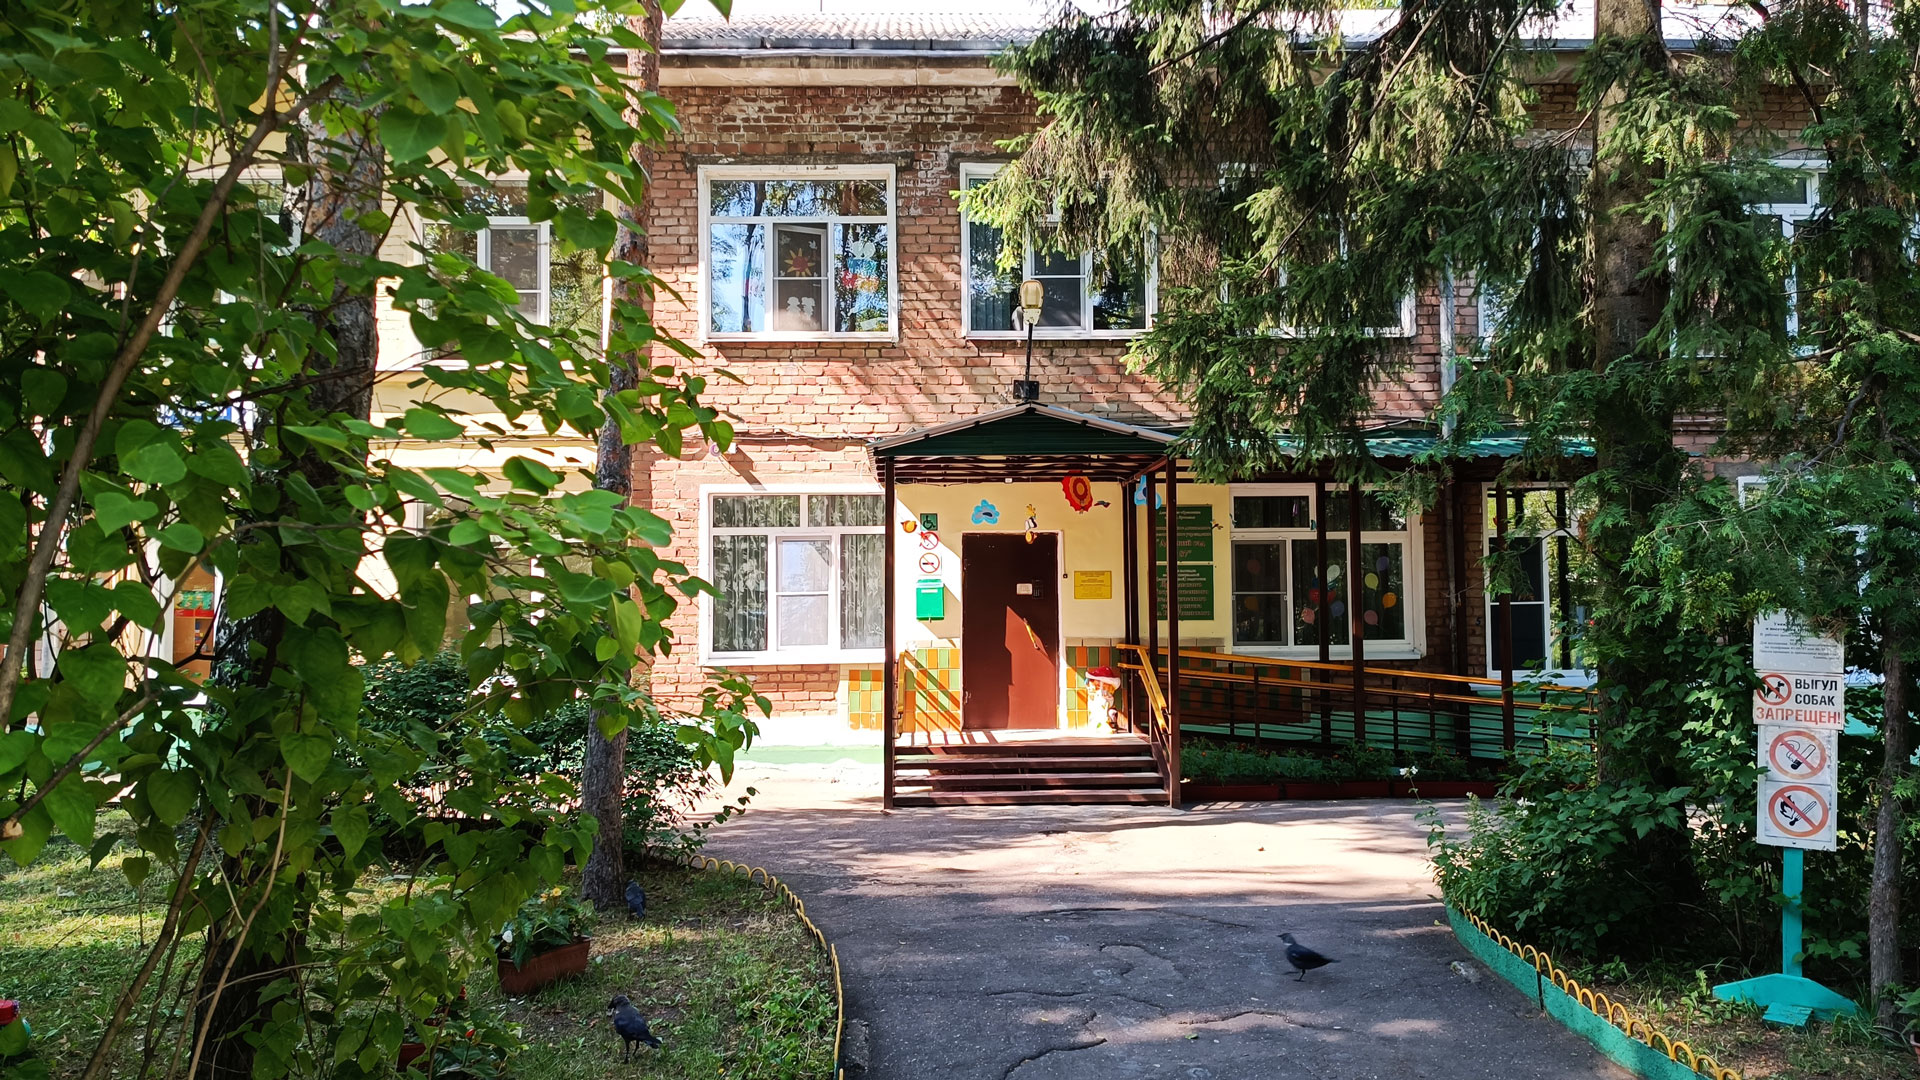 Детский сад 87 Ярославль: общий вид здания.